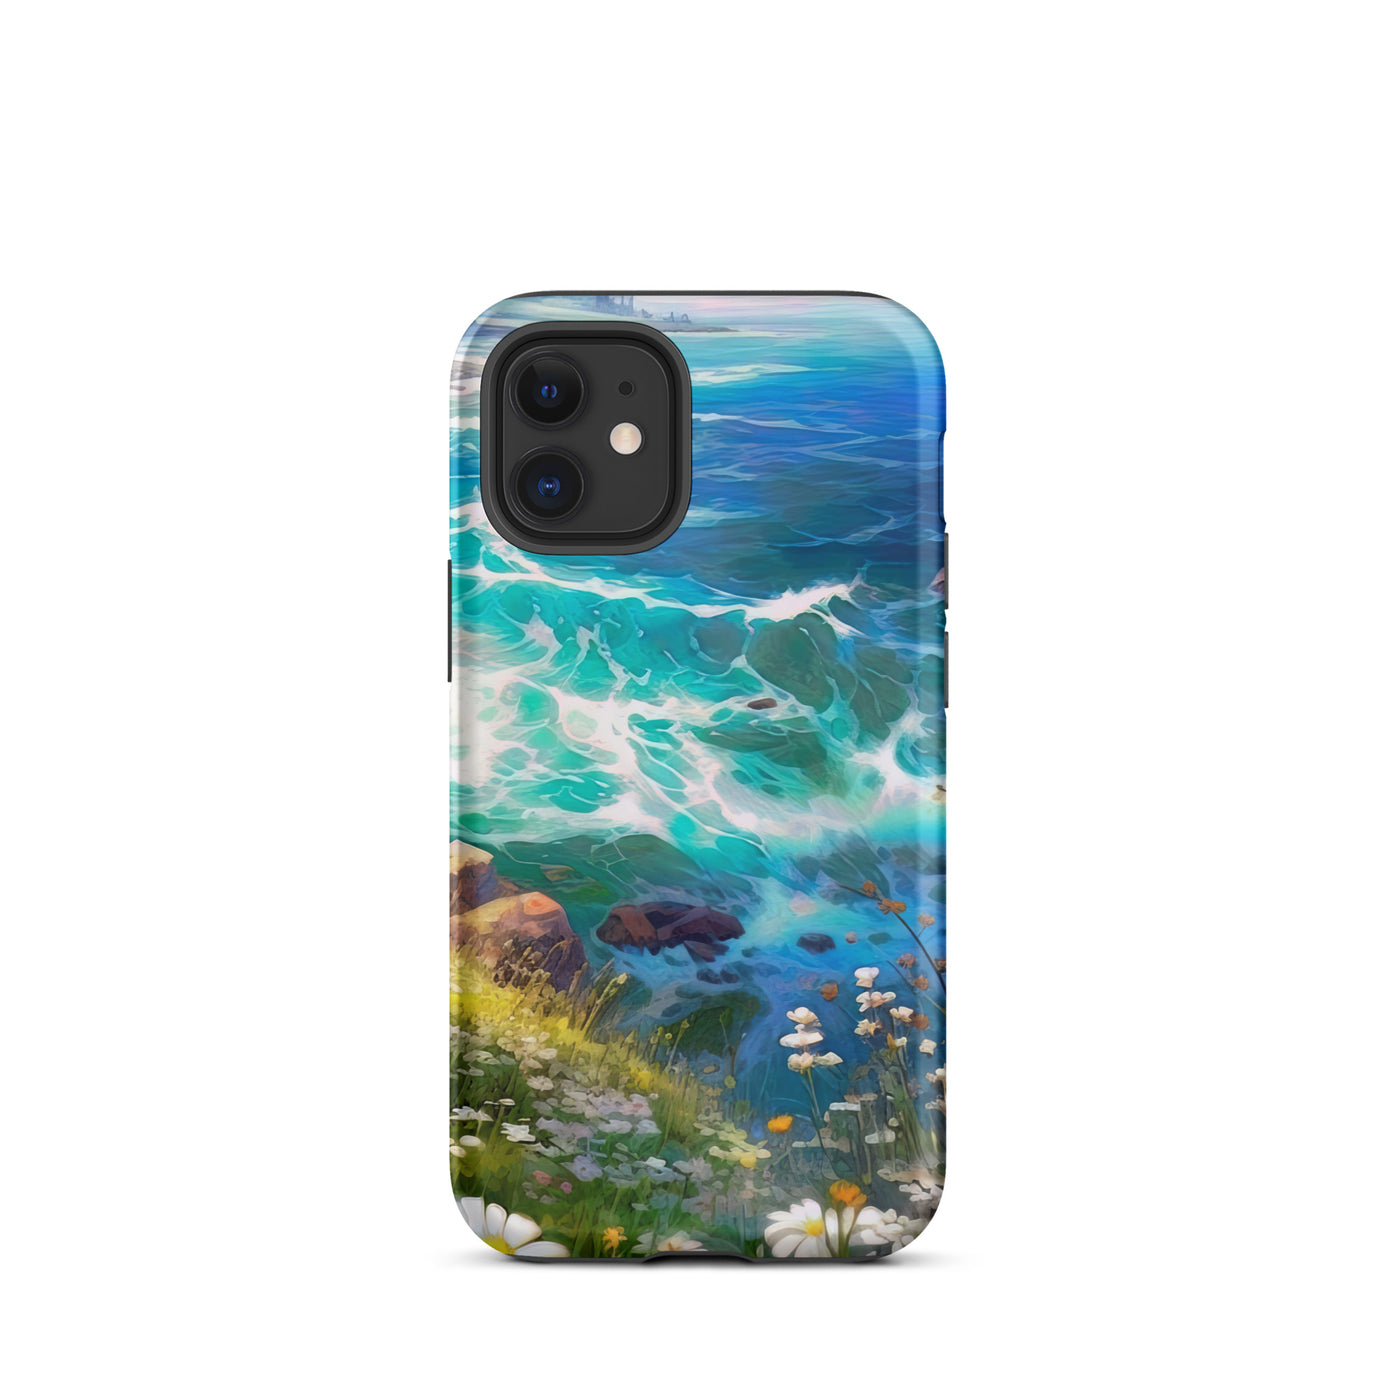 Berge, Blumen, Fluss und Steine - Malerei - iPhone Schutzhülle (robust) camping xxx iPhone 12 mini